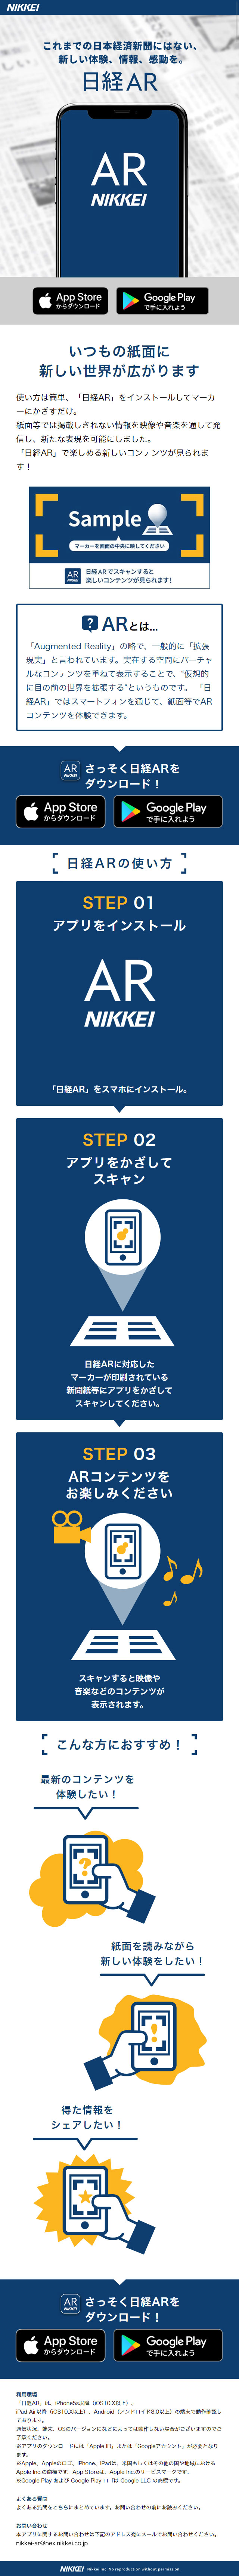 日本経済新聞 ARアプリ_sp_1